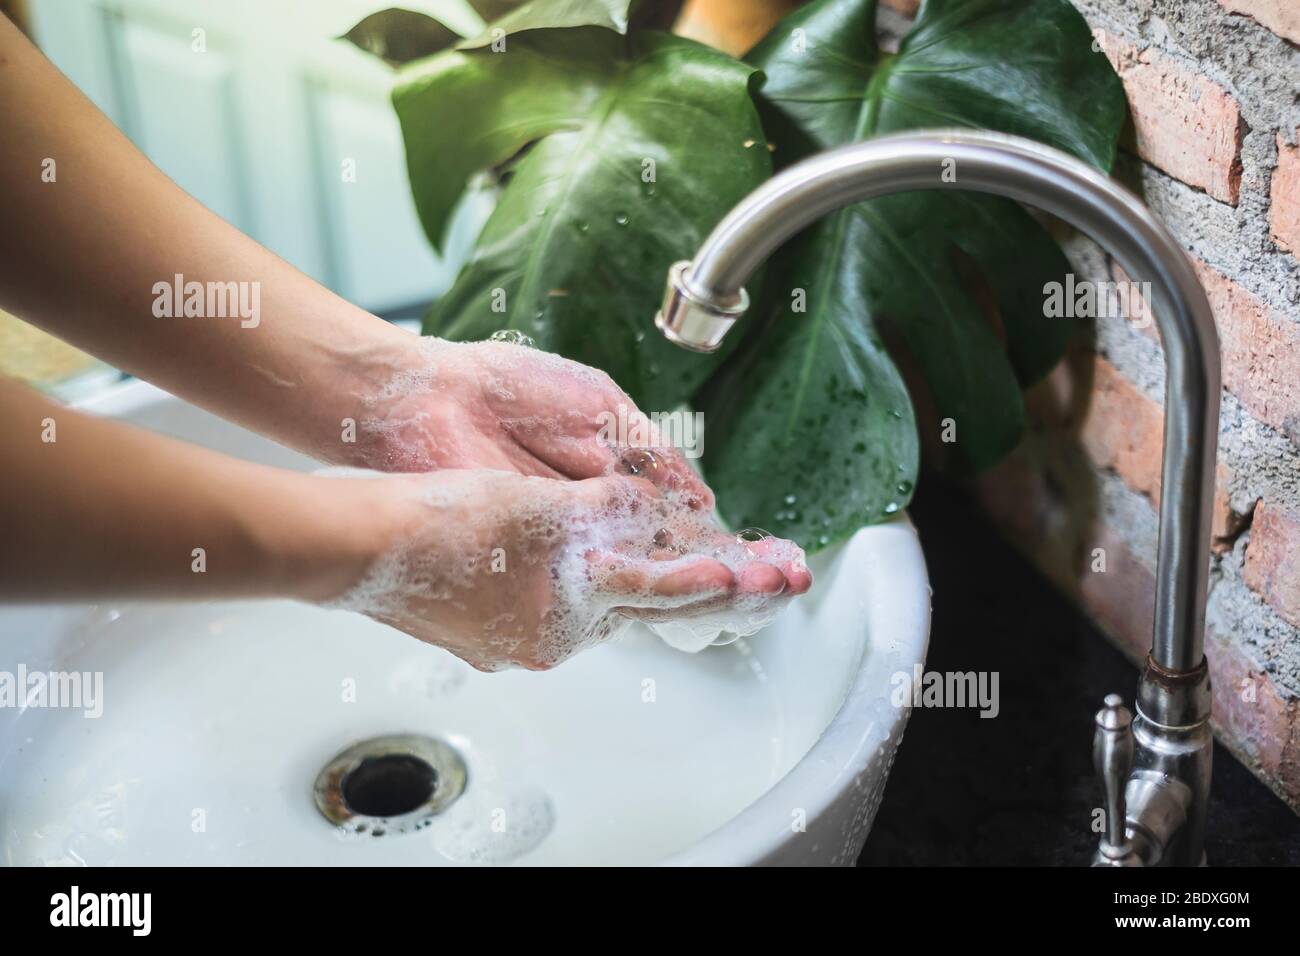 Waschen und Reiben der Hände mit Seife länger als 20 Sekunden kann helfen, Keime und Coronavirus (COVID-19) Ausbreitung zu verhindern. Stockfoto